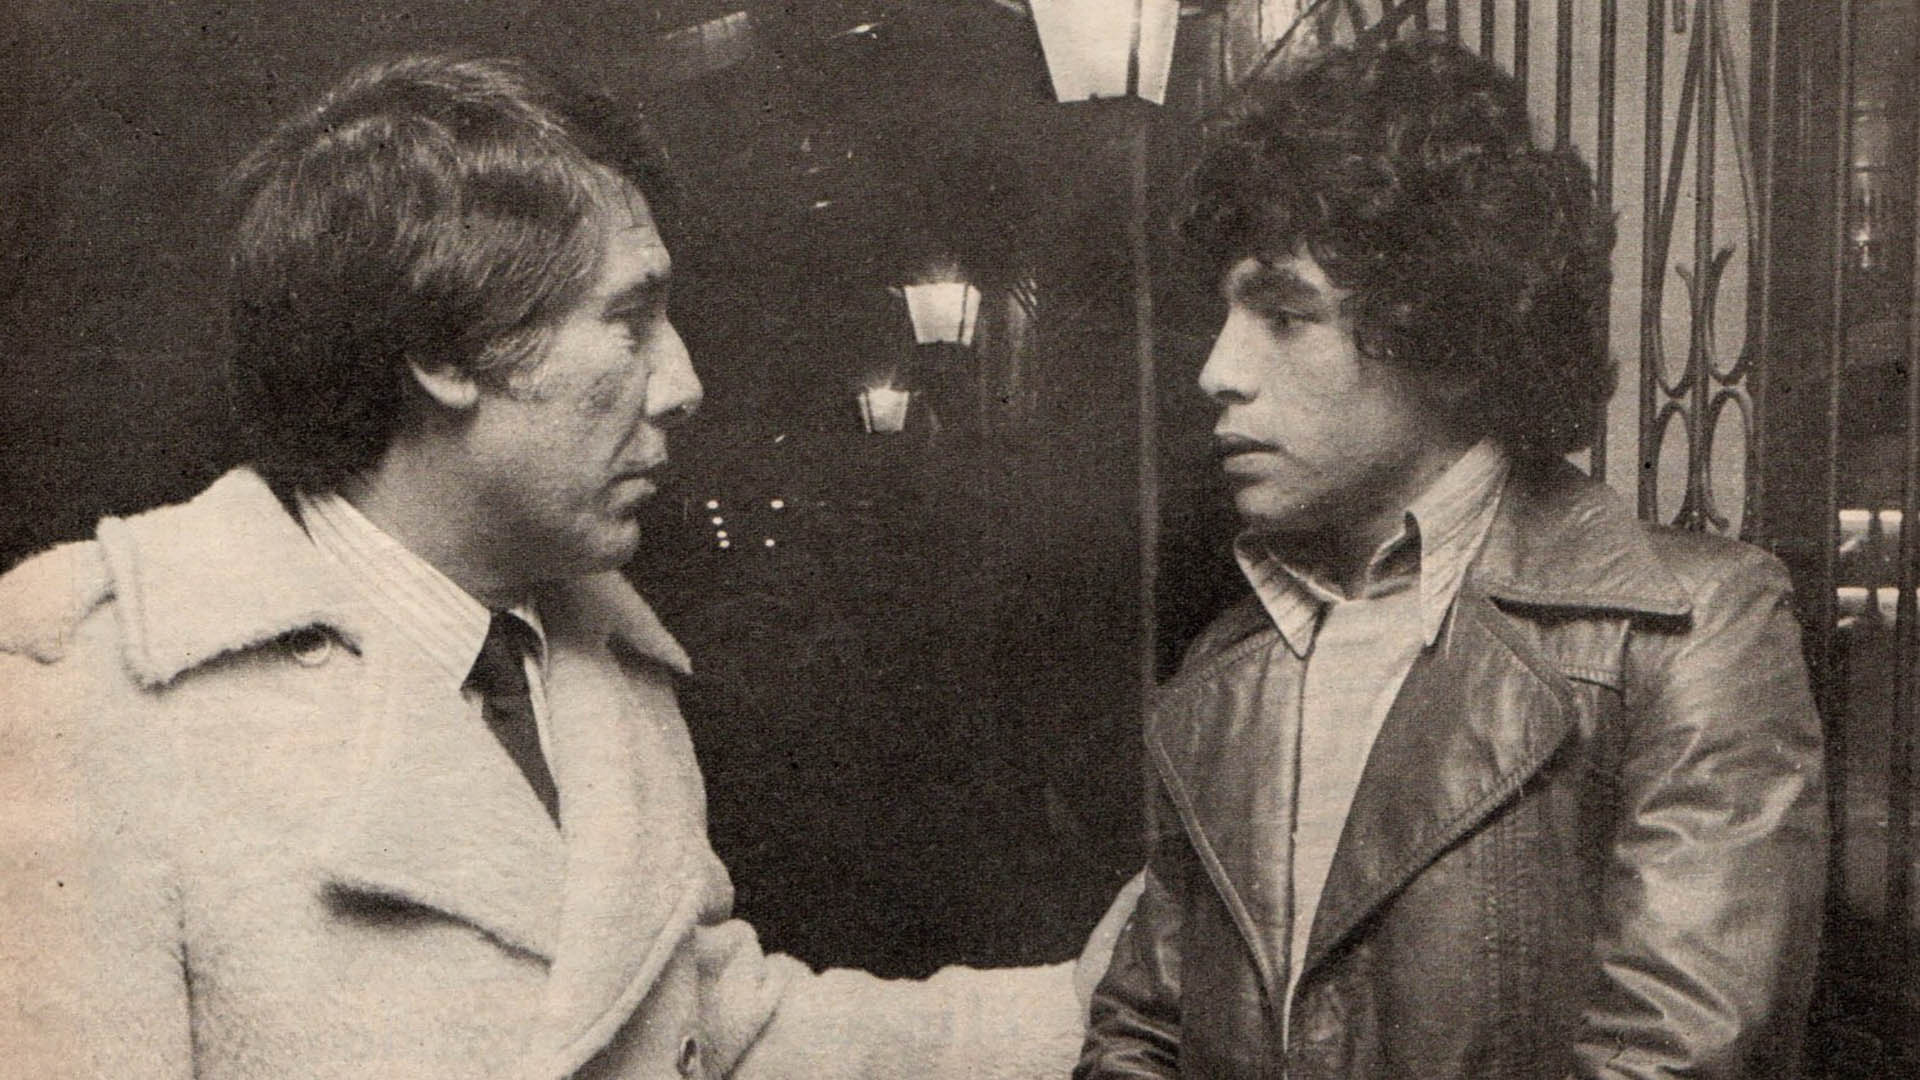 El encuentro entre Sívori y Maradona en El Gráfico
